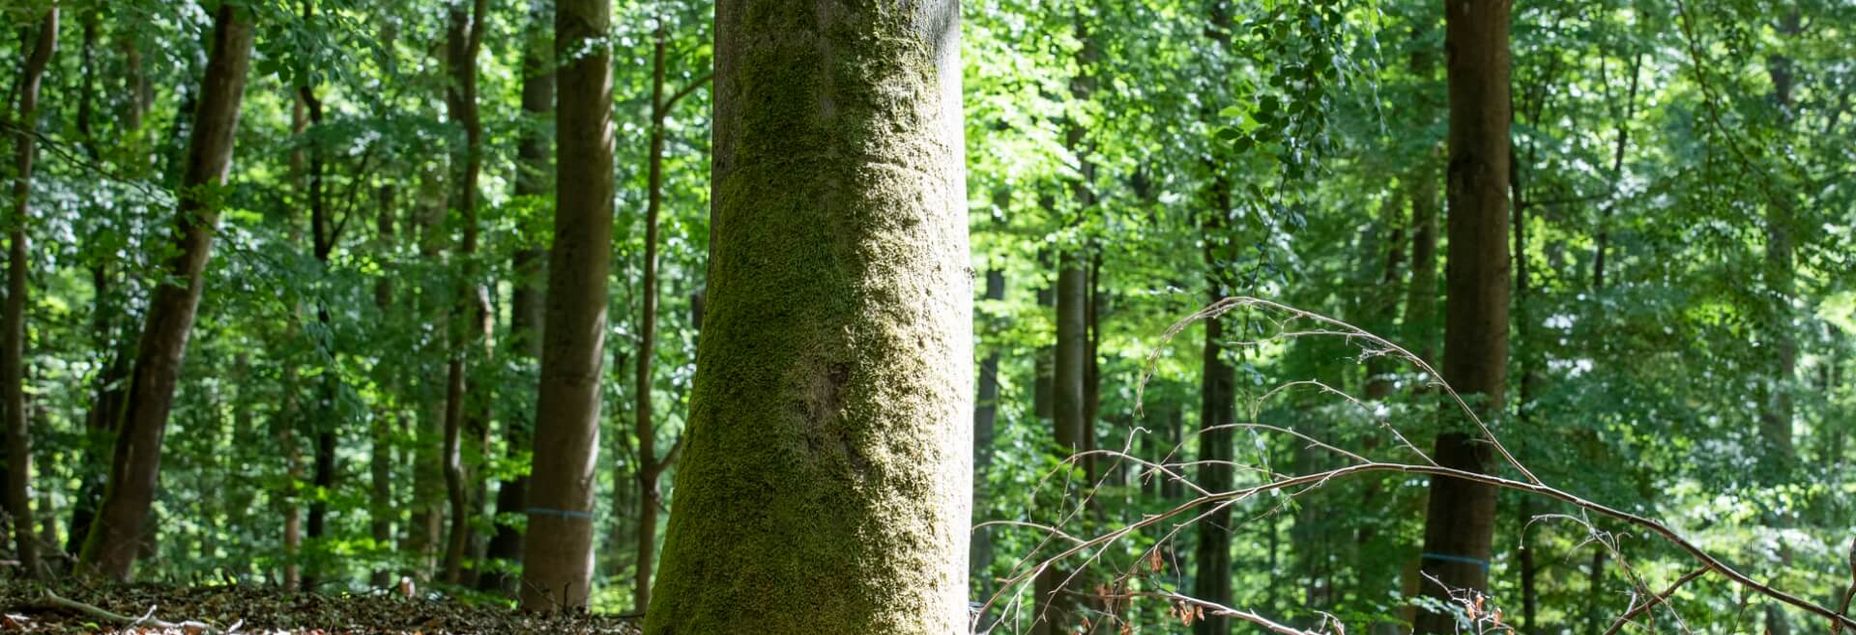 Baum BER 1016 - Nahaufnahme